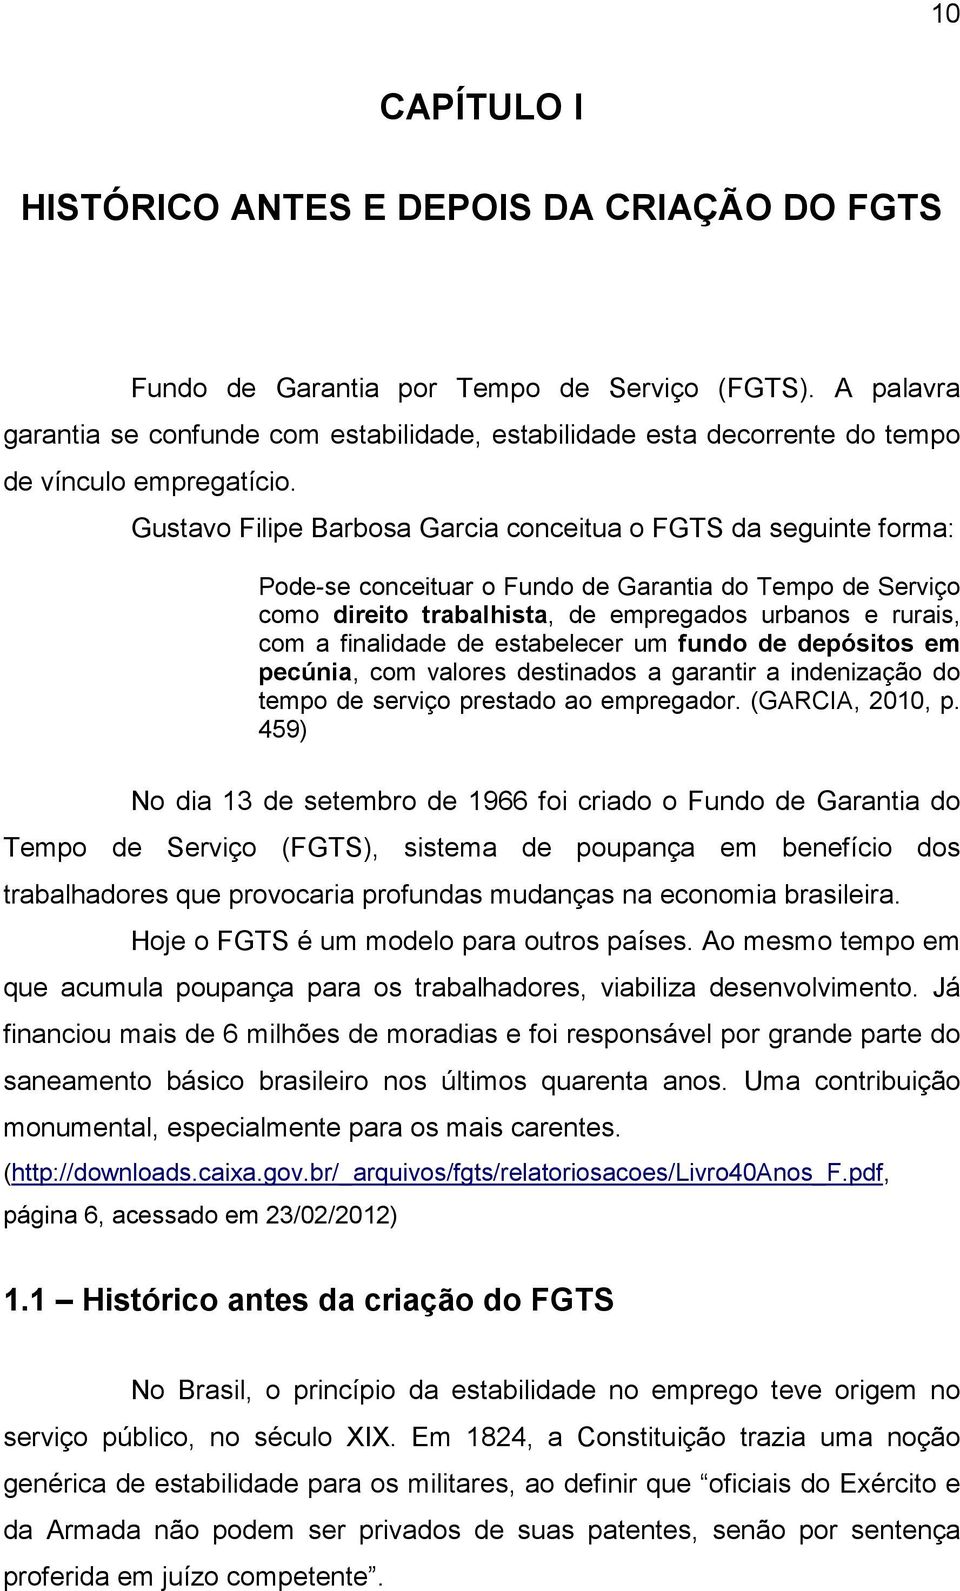 Gustavo Filipe Barbosa Garcia conceitua o FGTS da seguinte forma: Pode-se conceituar o Fundo de Garantia do Tempo de Serviço como direito trabalhista, de empregados urbanos e rurais, com a finalidade